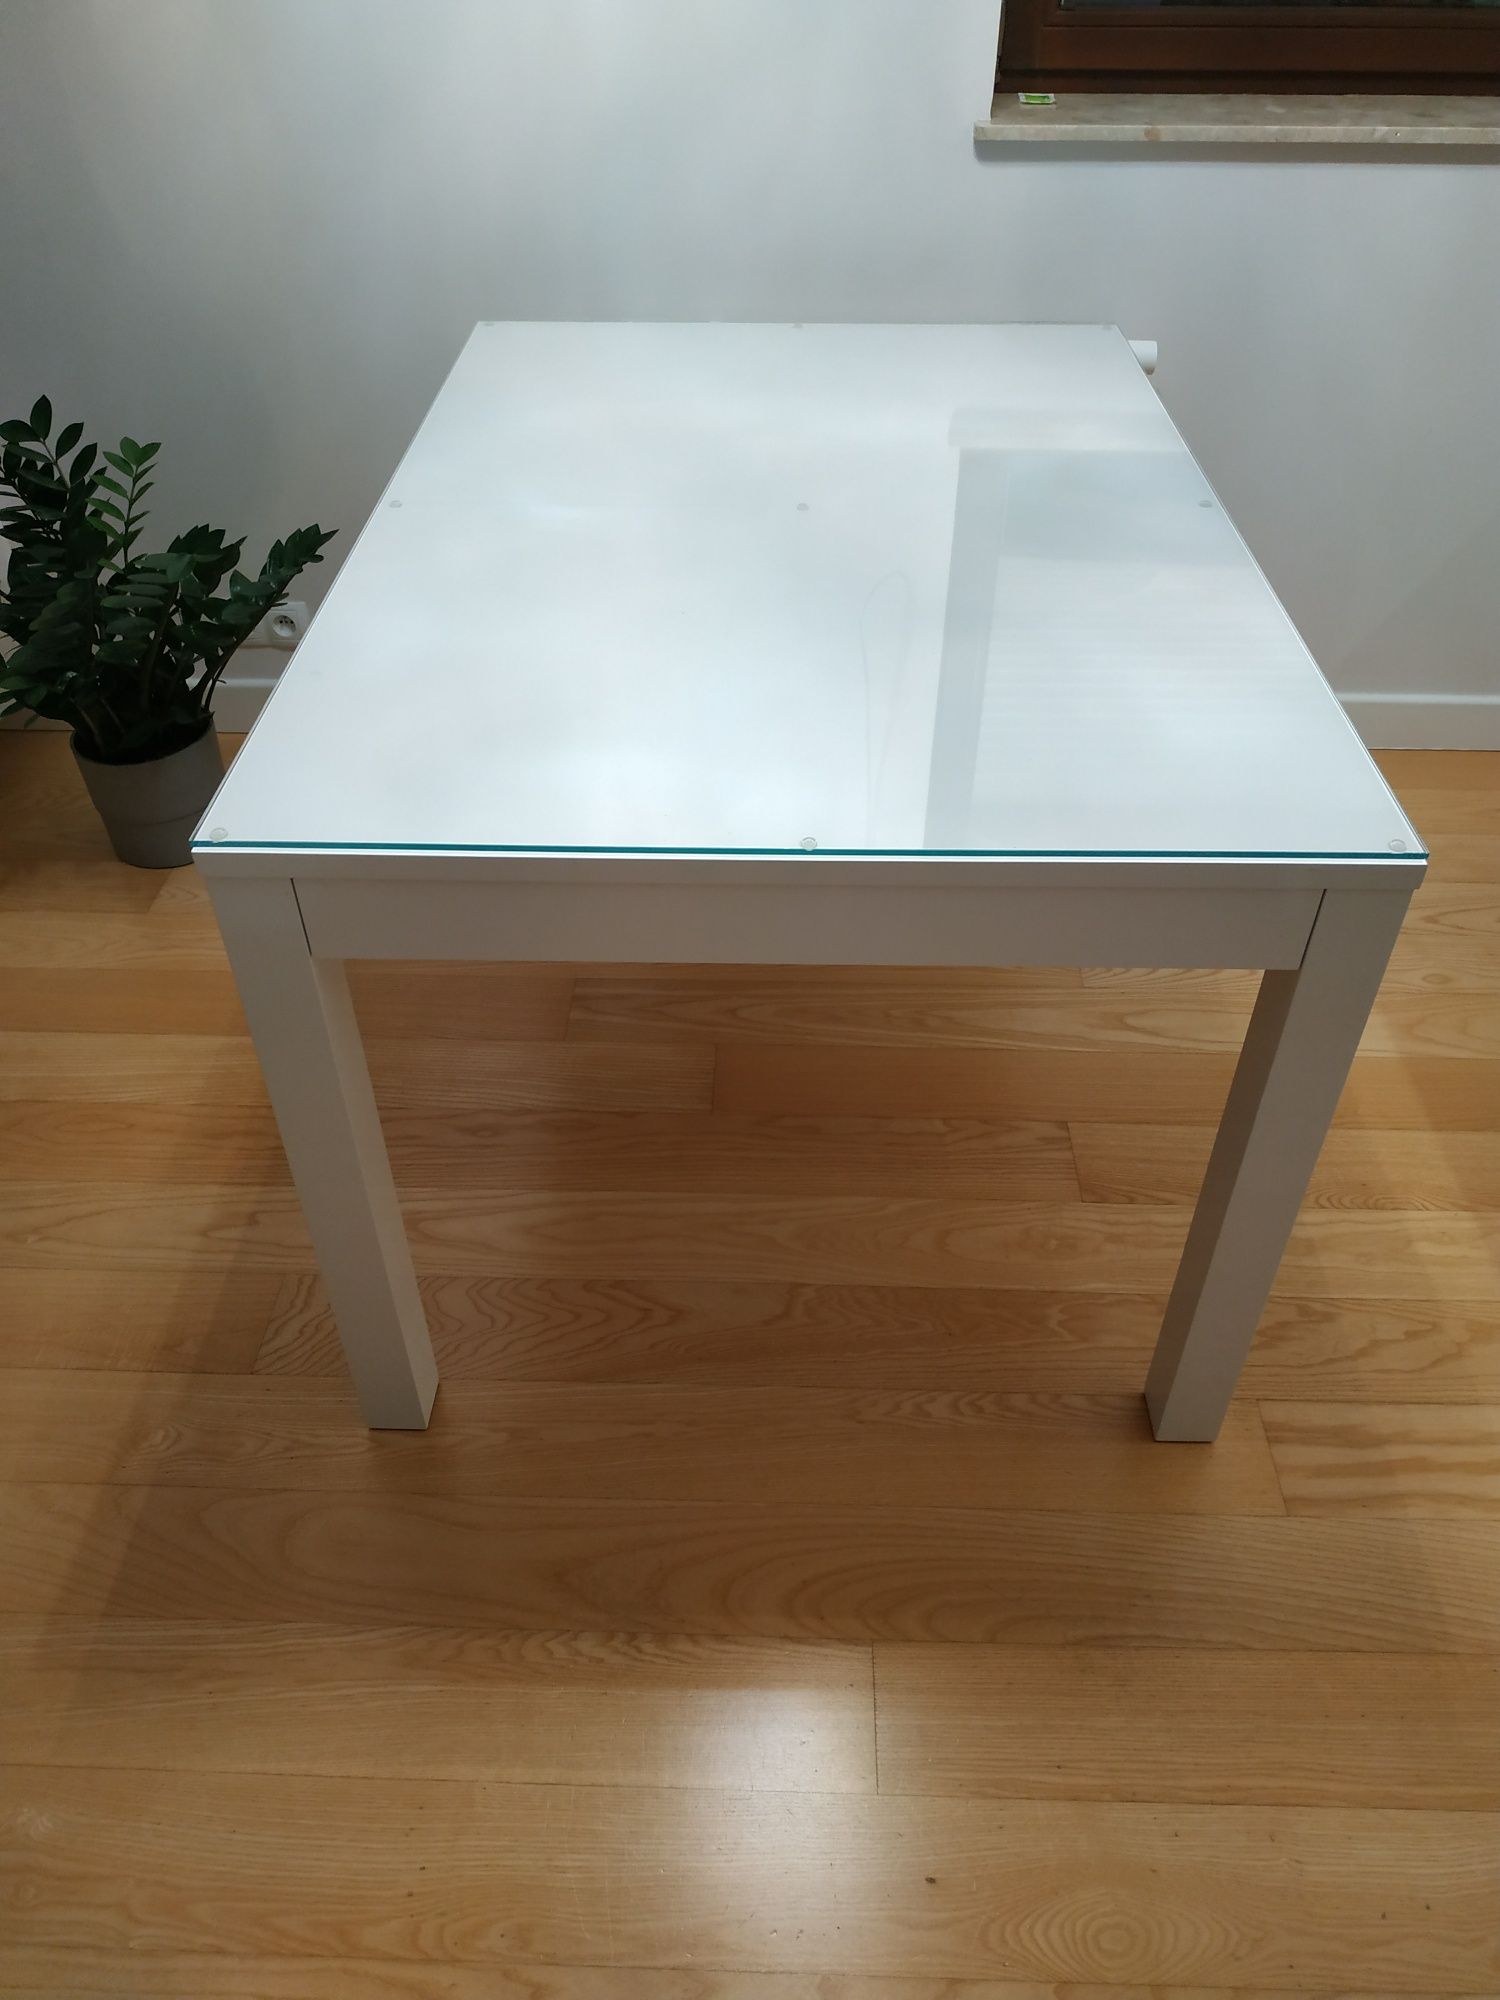 Stół rozkładany biały lakierowany, połysk 130x90cm, dwie wkładki 42 cm